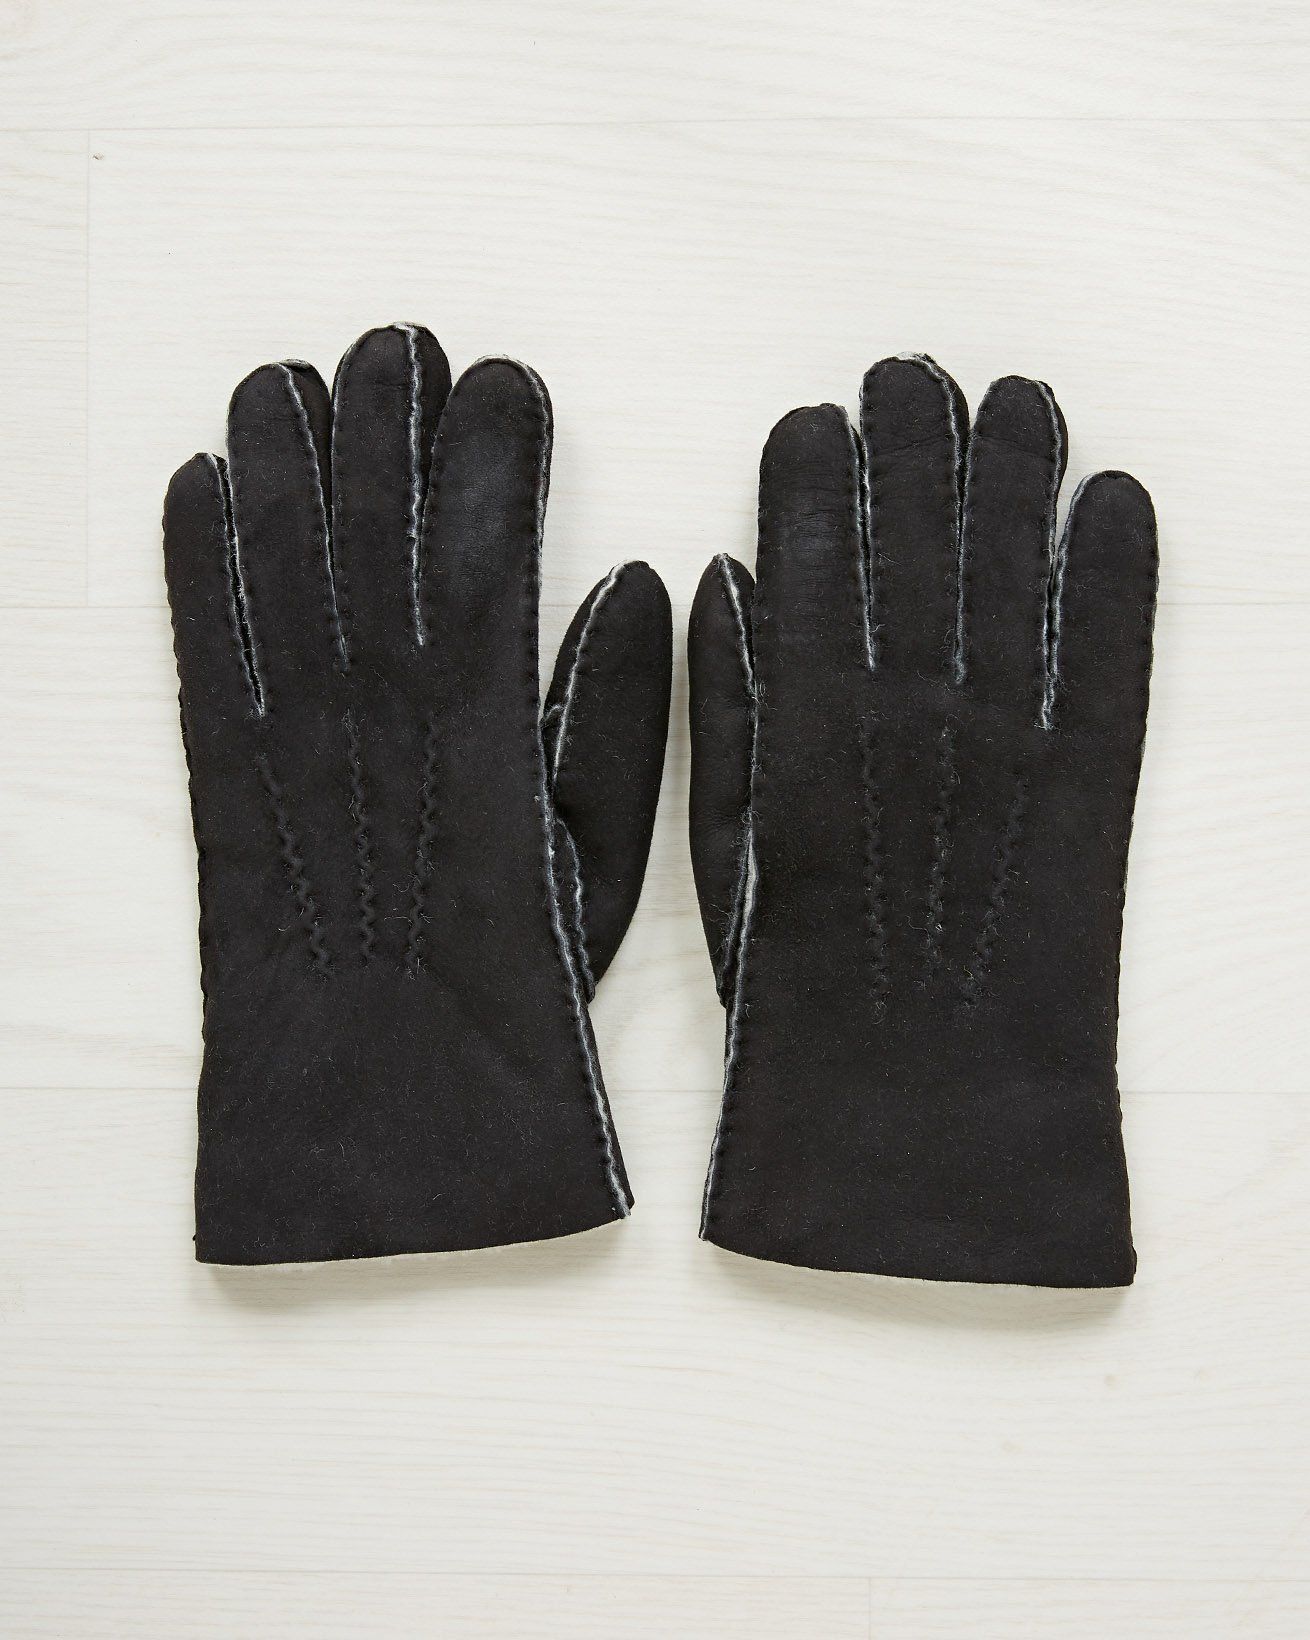 Sheepskin Gloves / Size Extra Large / Black